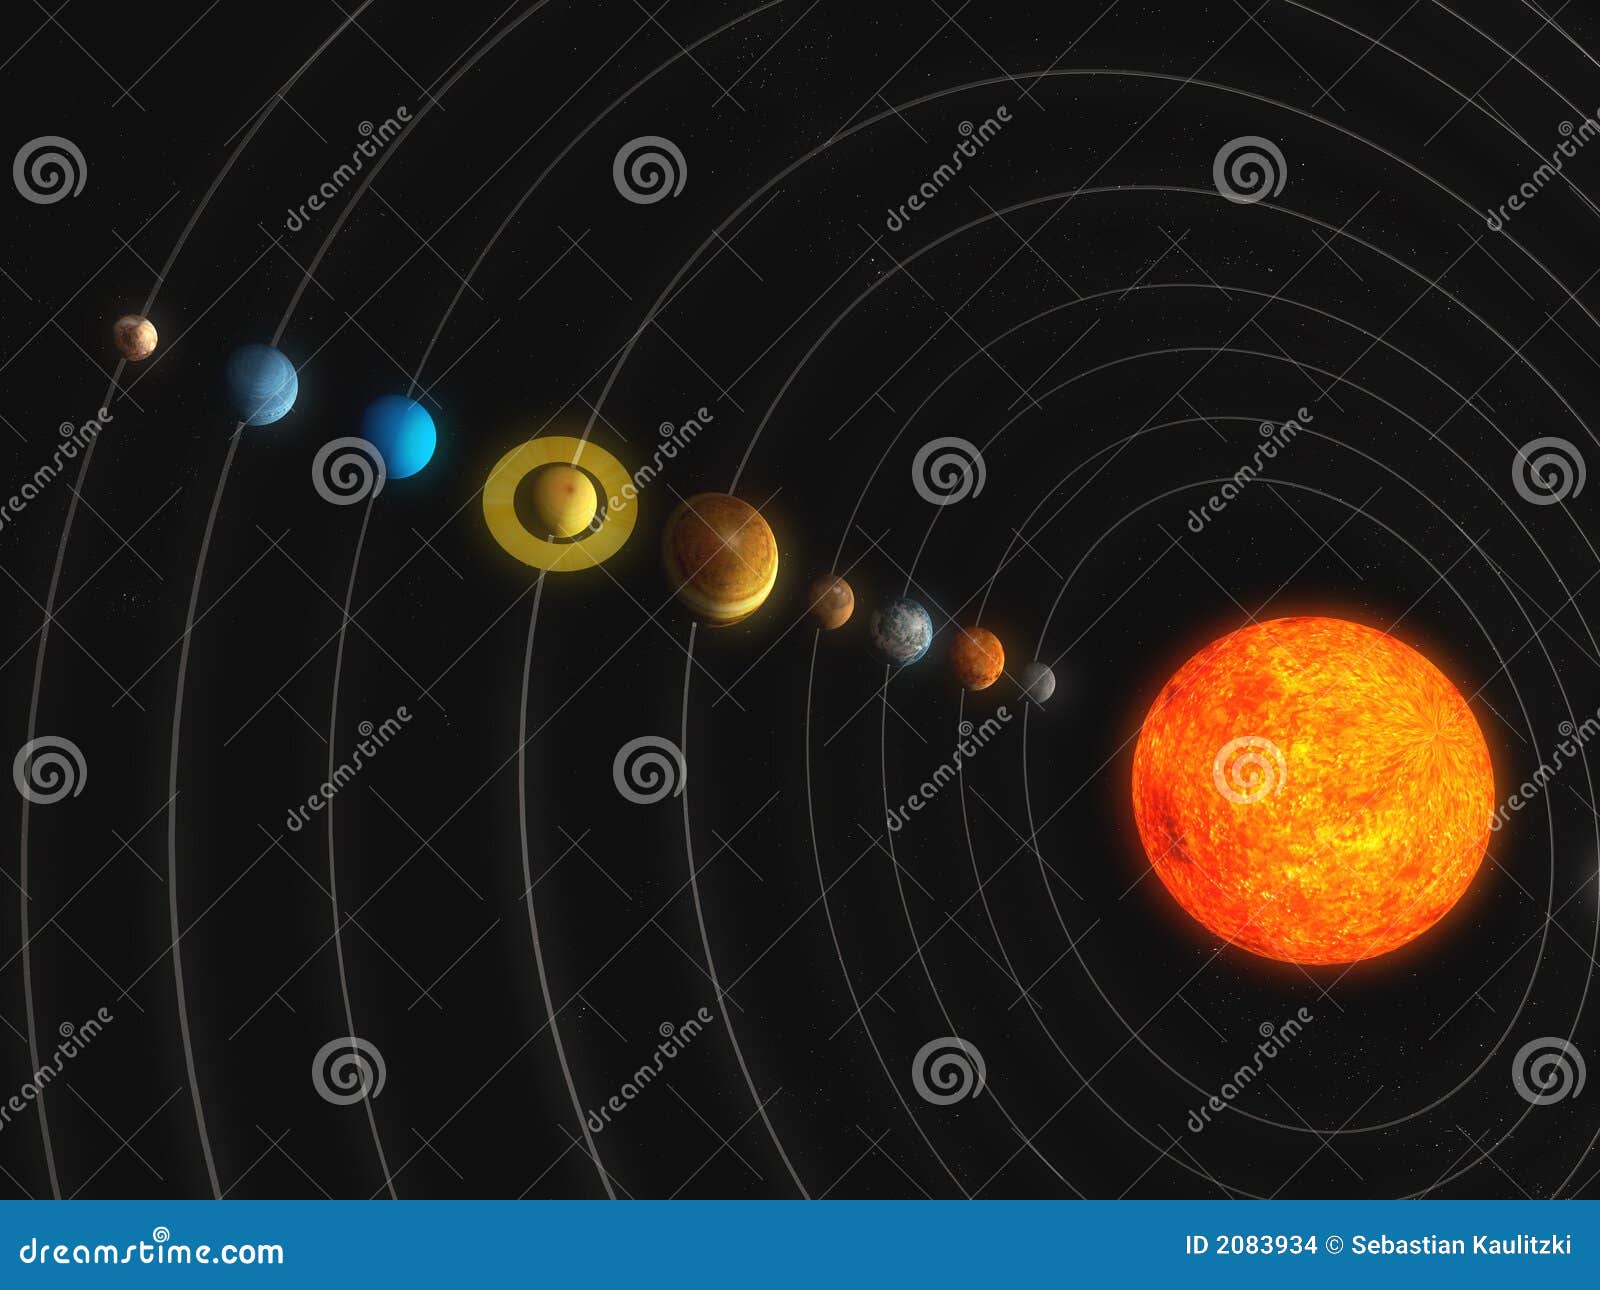 солнечная система. иллюстрация 3d представила солнечную систему